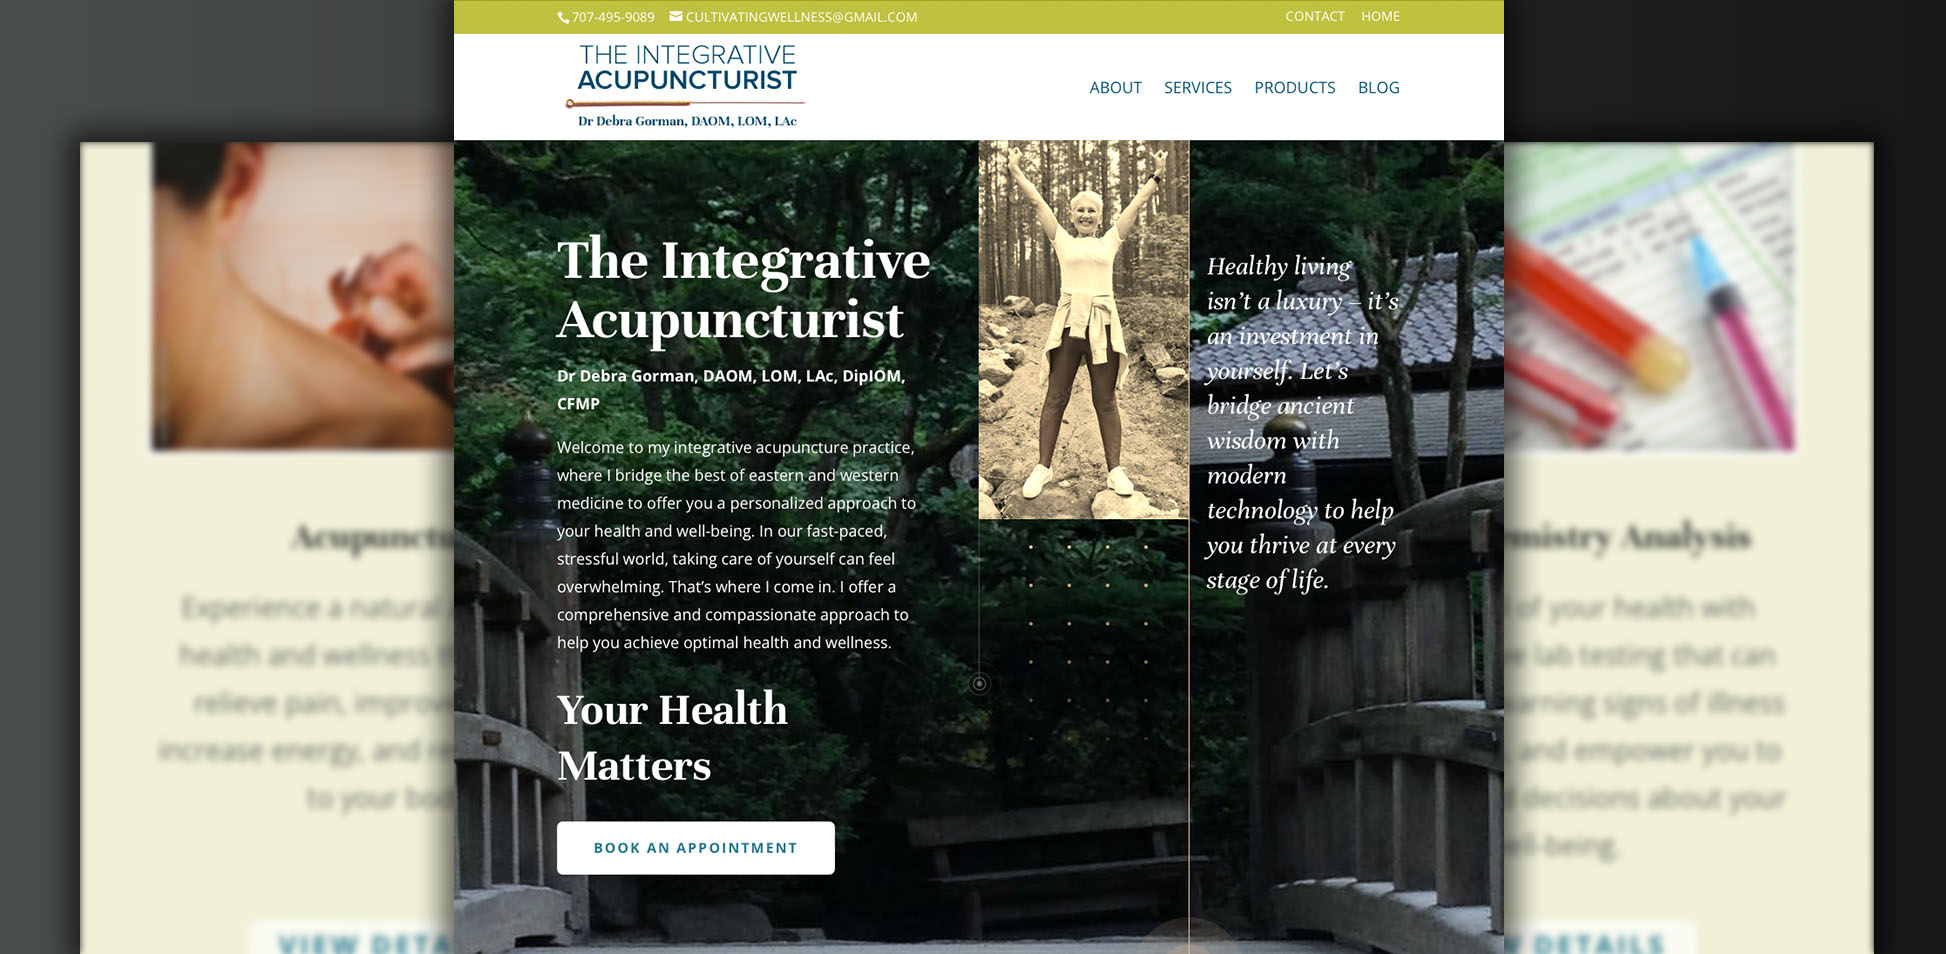 The Integrative Acupuncturist